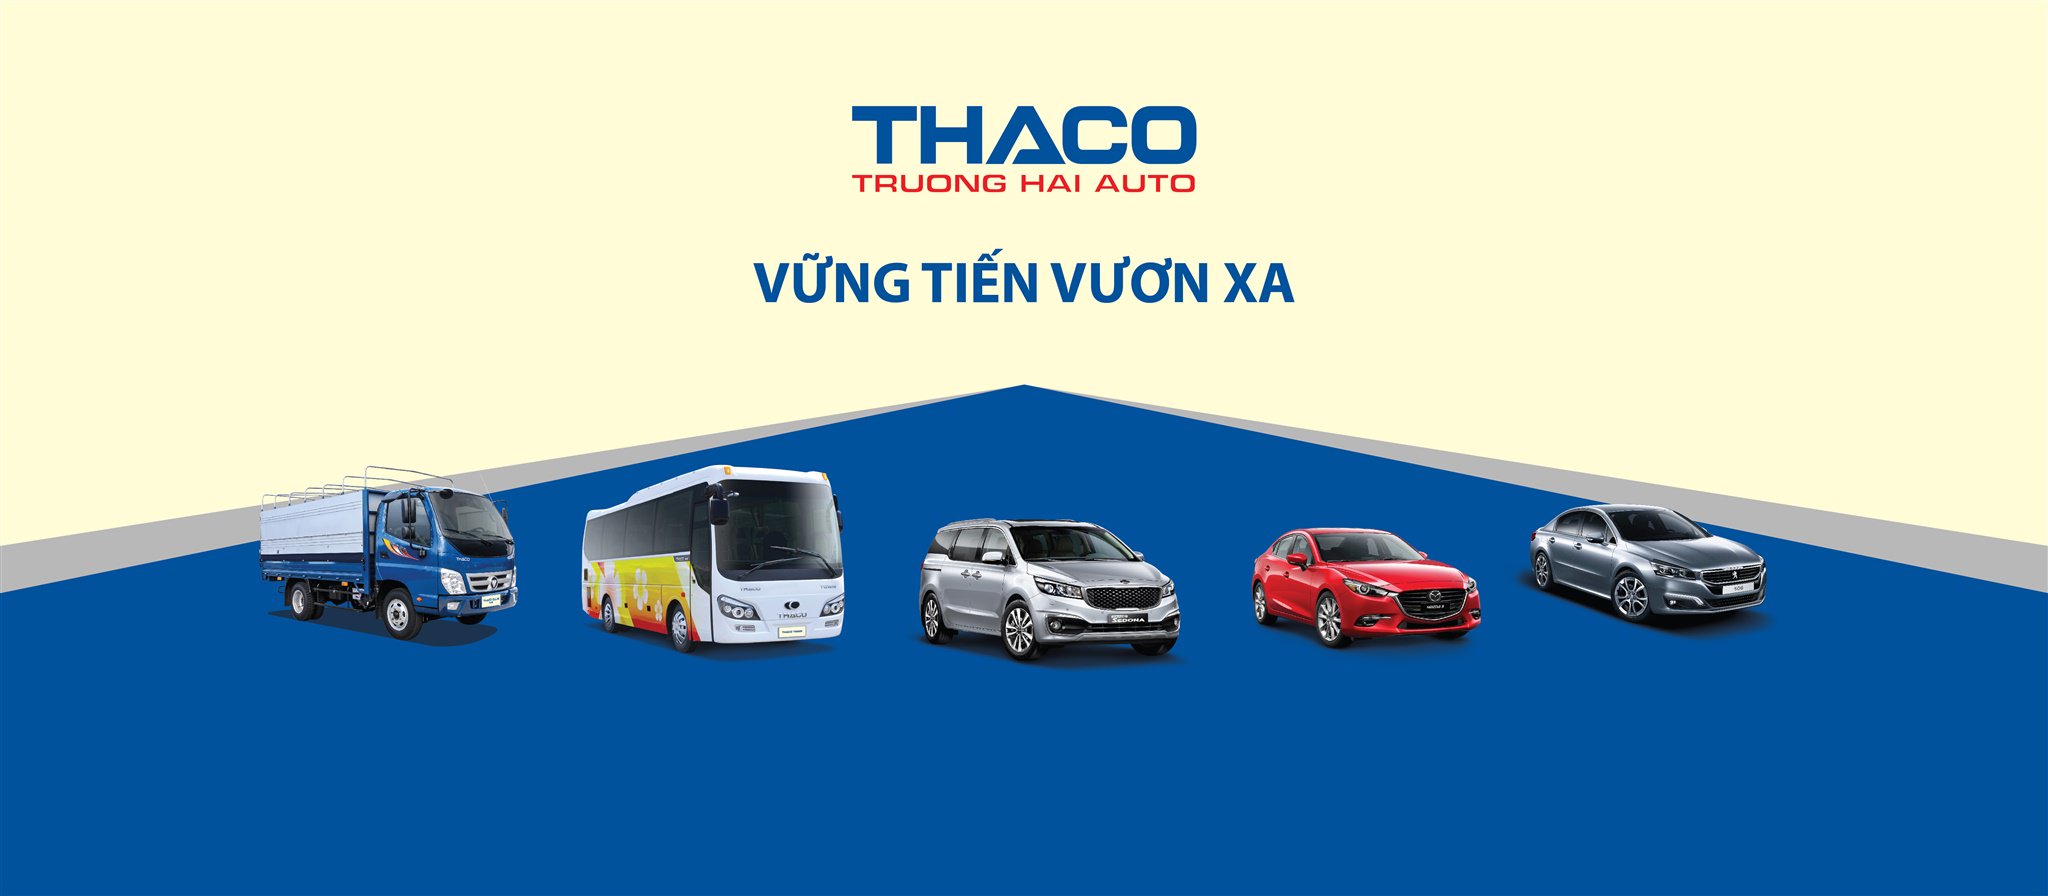 Xe tải là một trong những phương tiện quan trọng nhất trong kinh tế hiện đại. Với bảng giá cực kỳ hấp dẫn từ Thaco, các doanh nghiệp và cá nhân có thể sở hữu ngay chiếc xe tải đáp ứng nhu cầu của mình.